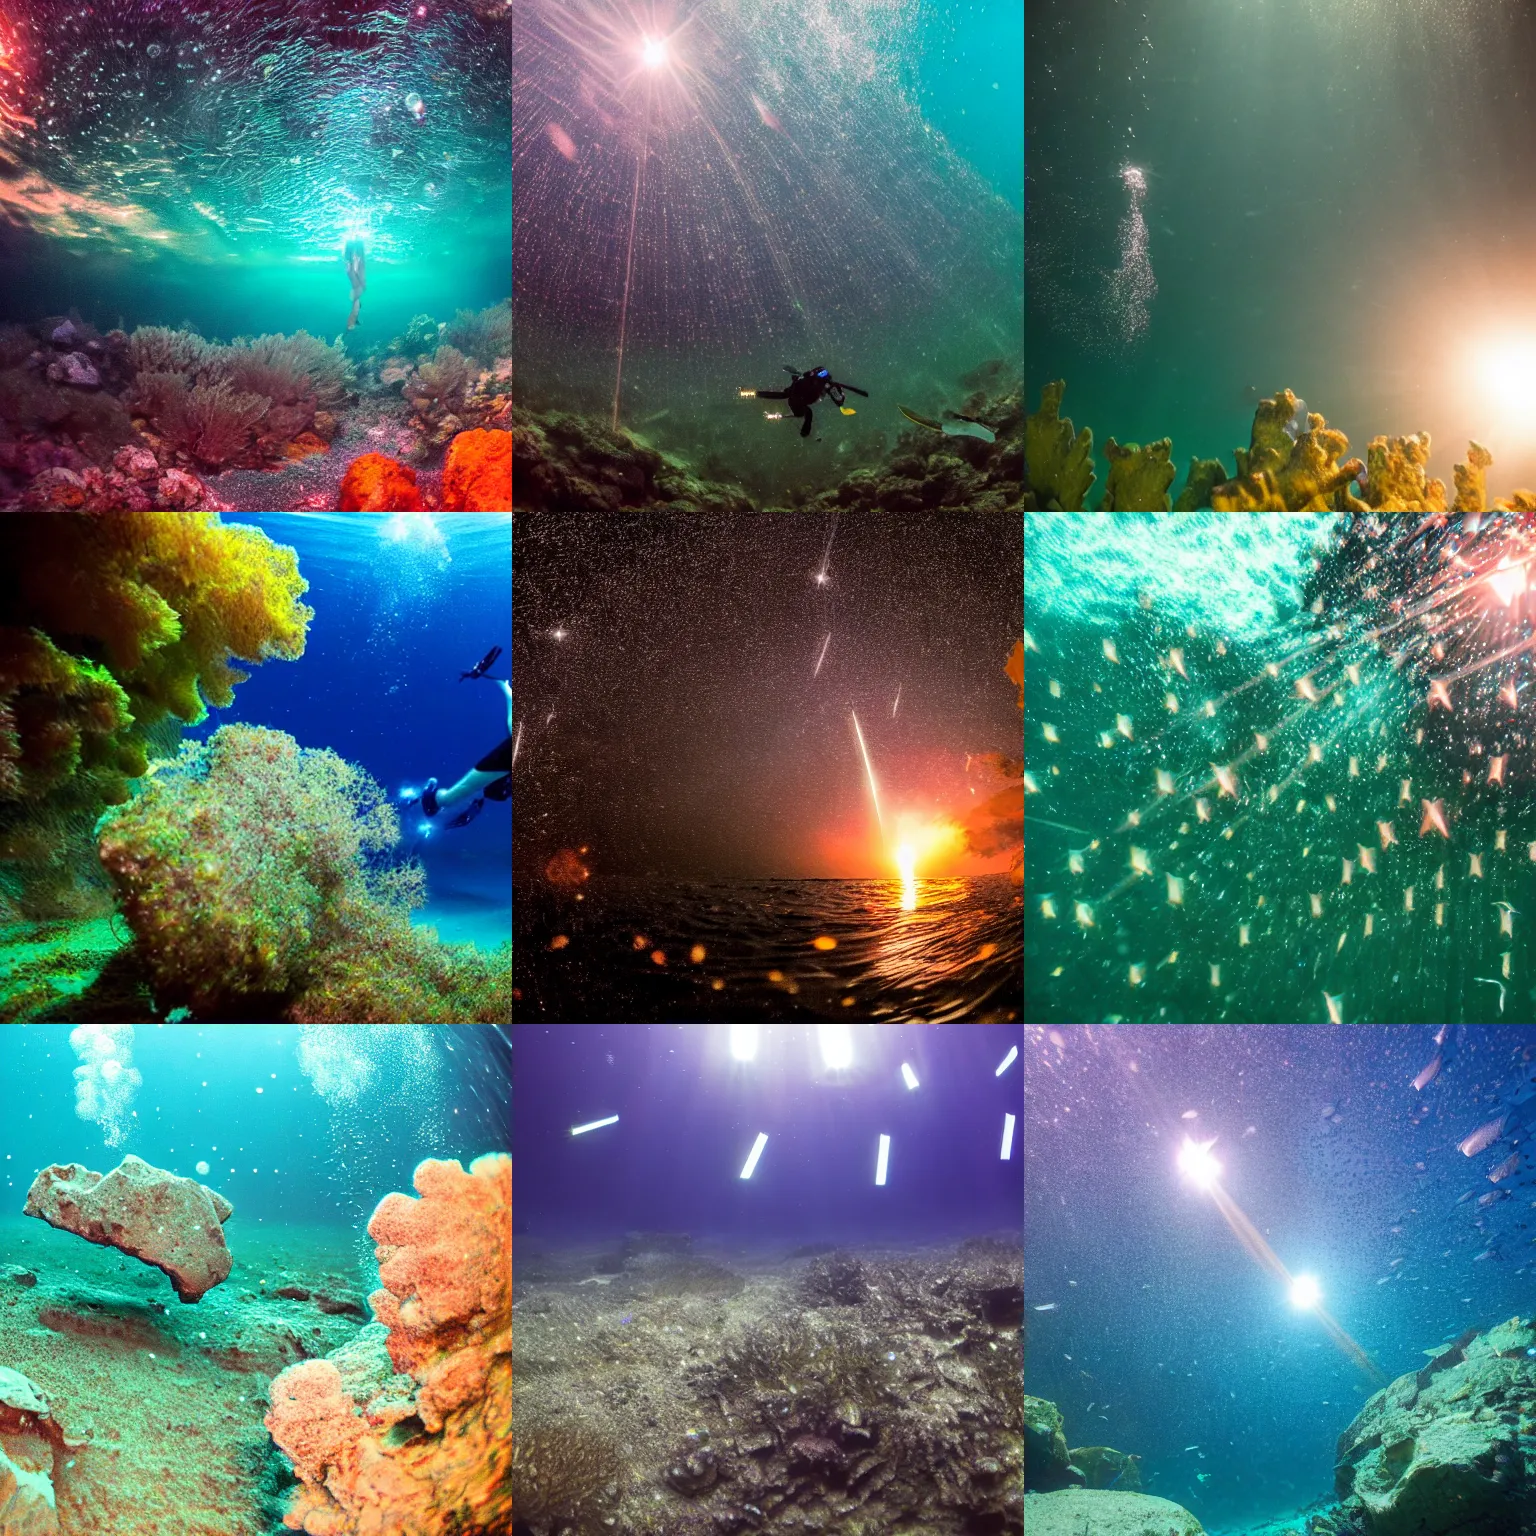 Prompt: underwater meteor shower, 4K underwater scuba photography